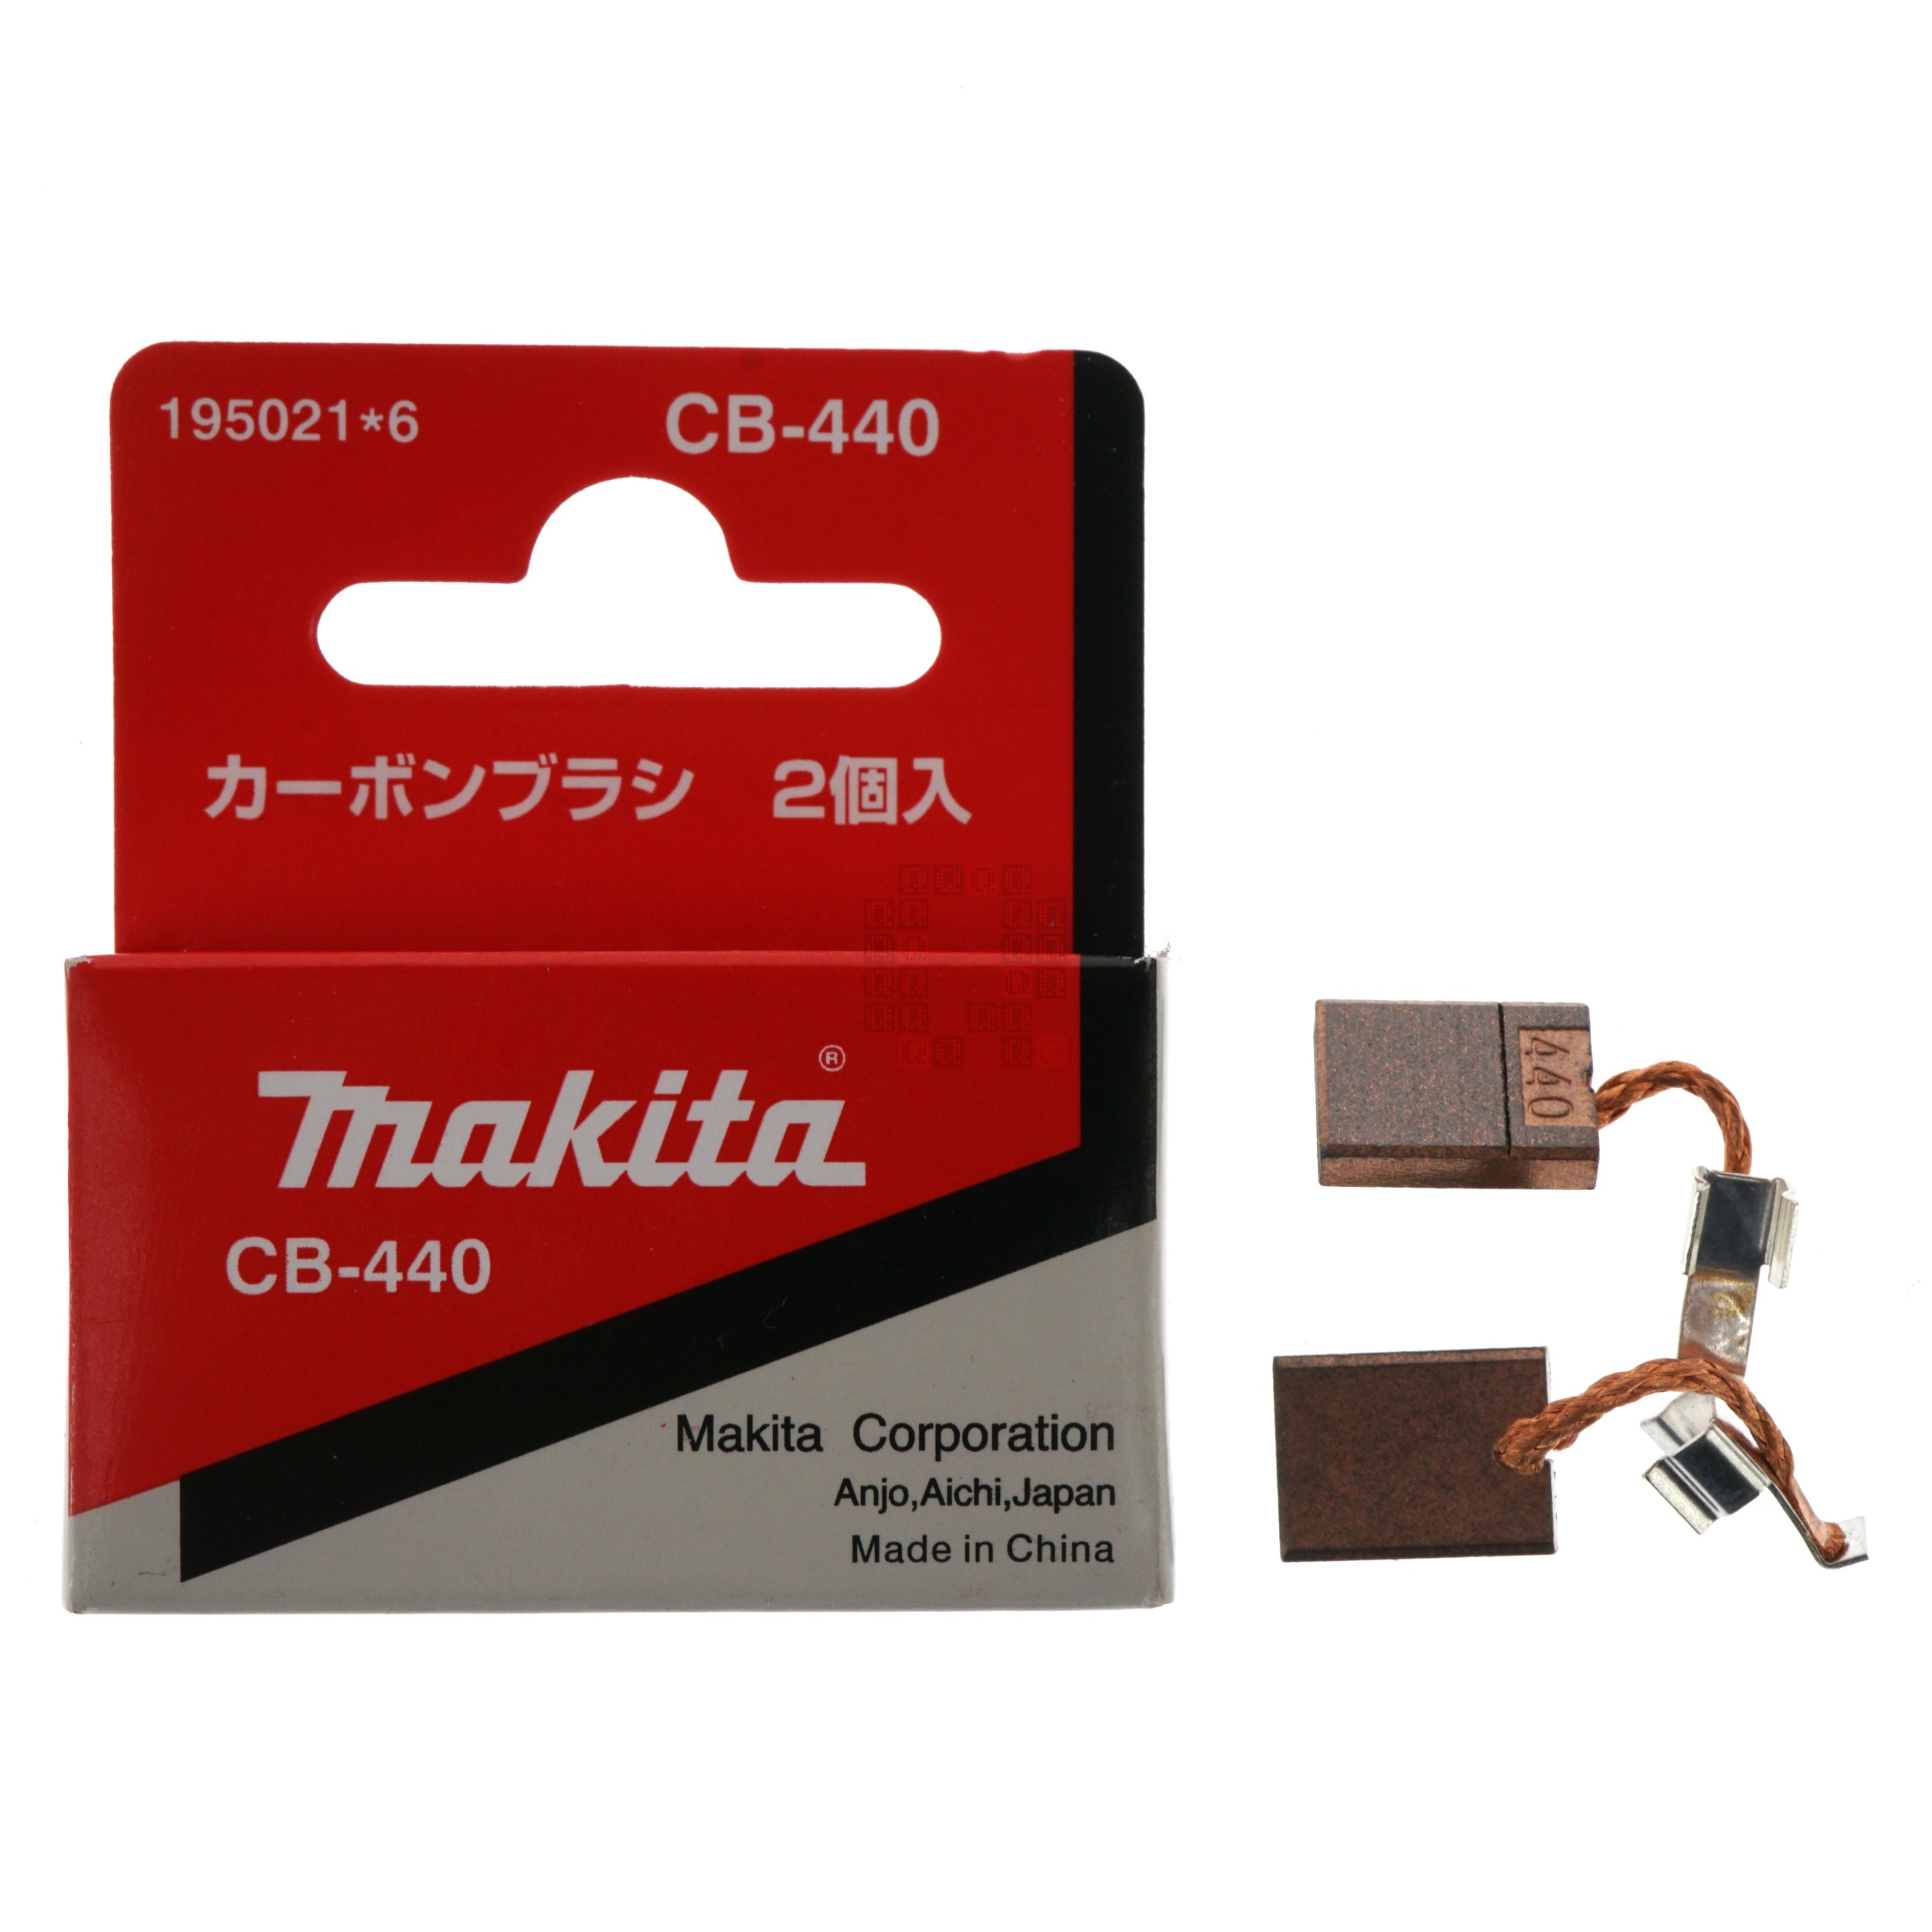 Makita CB440 Carbon Brush Set, 195021-6